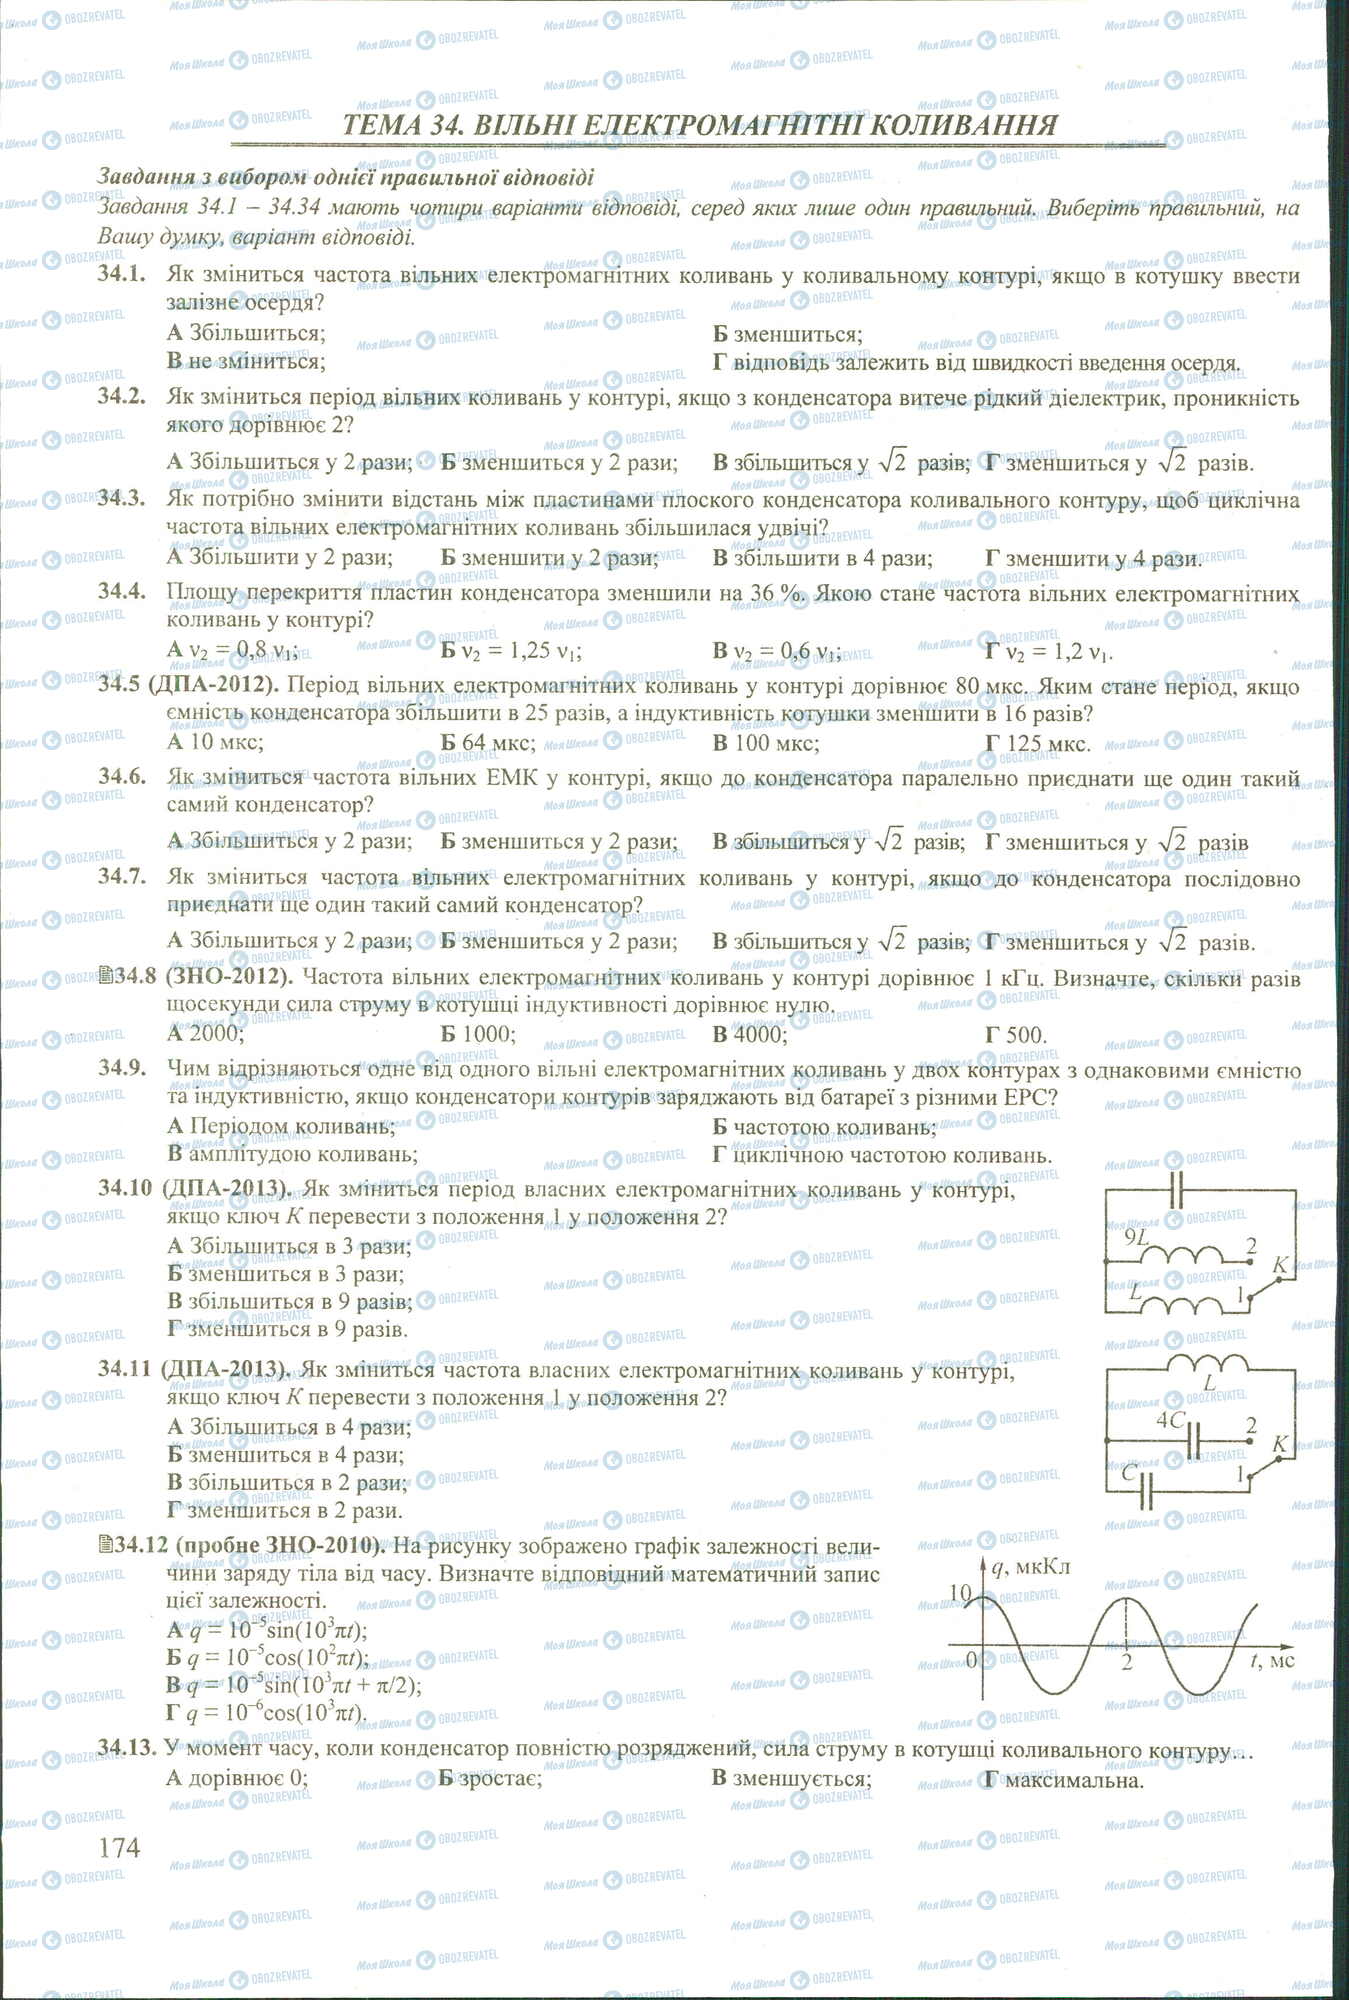 ЗНО Физика 11 класс страница 1-13